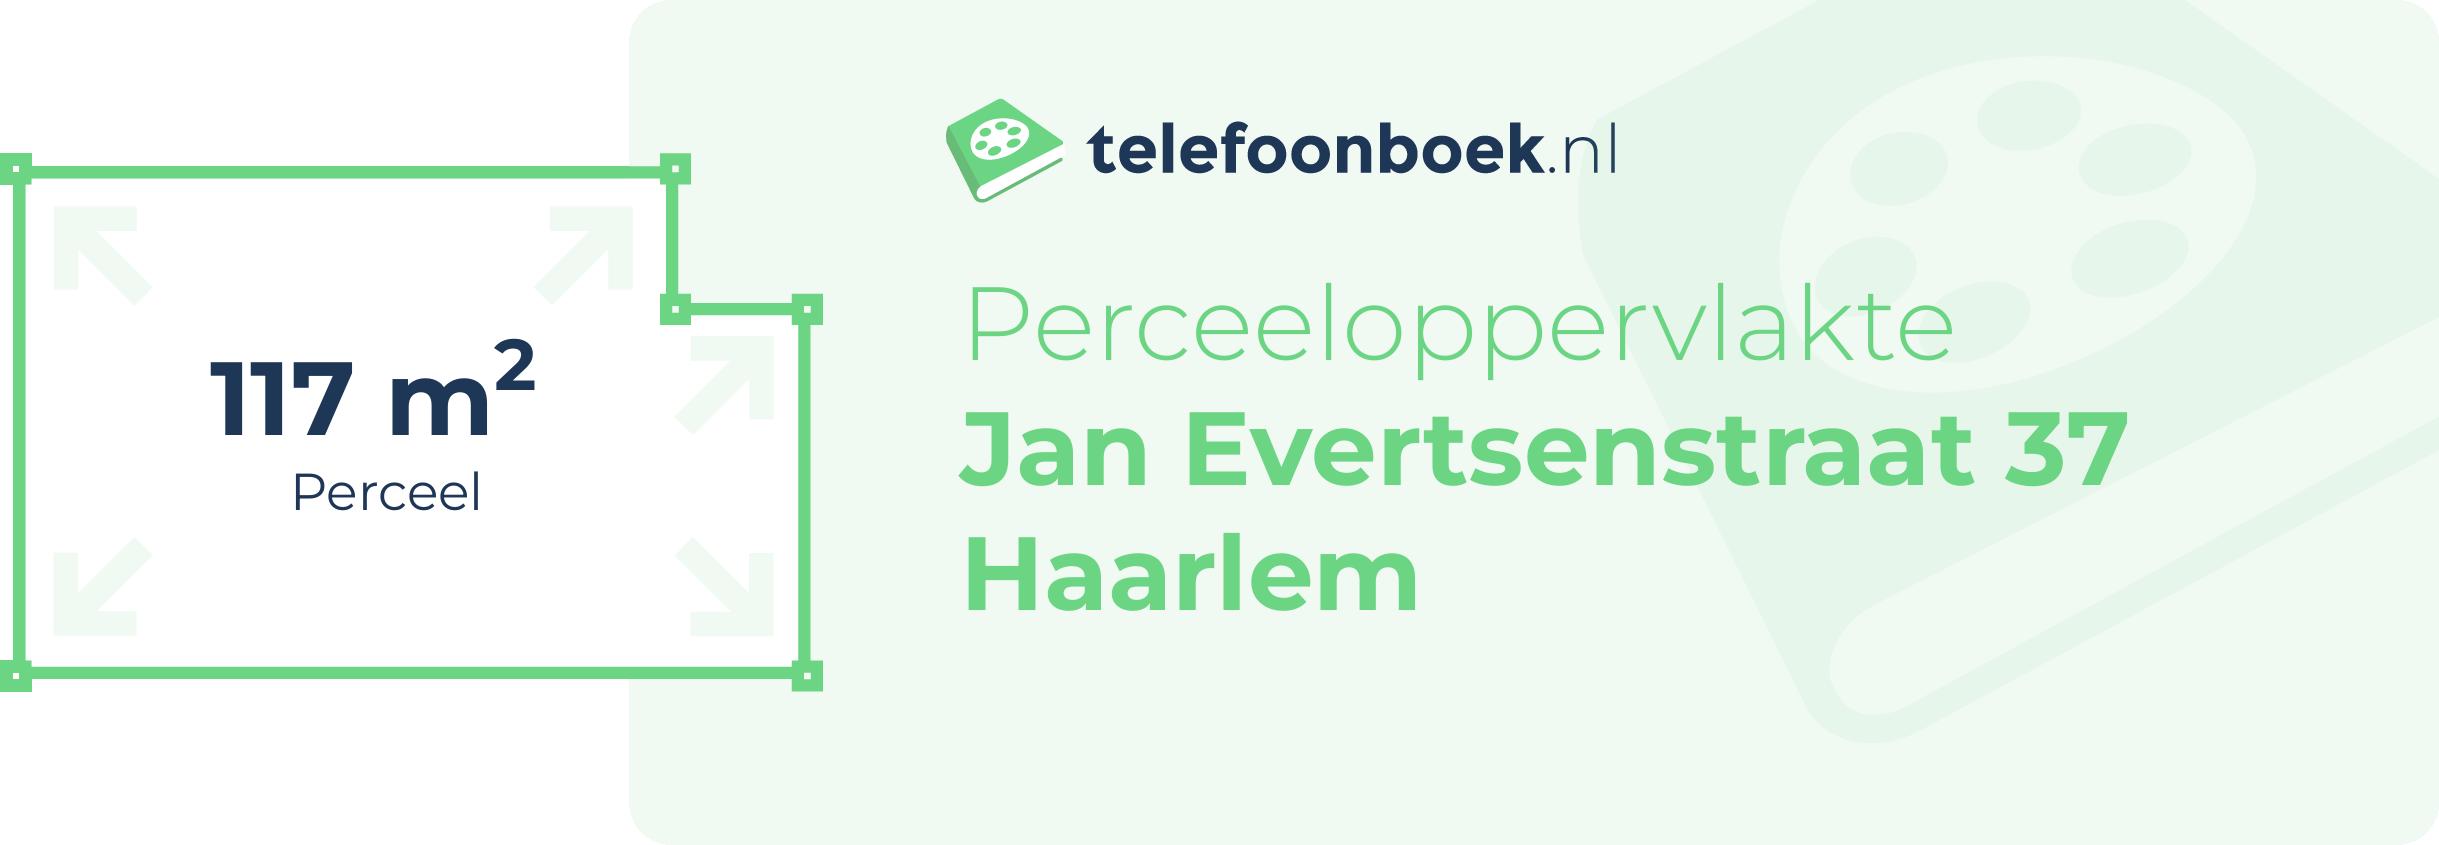 Perceeloppervlakte Jan Evertsenstraat 37 Haarlem